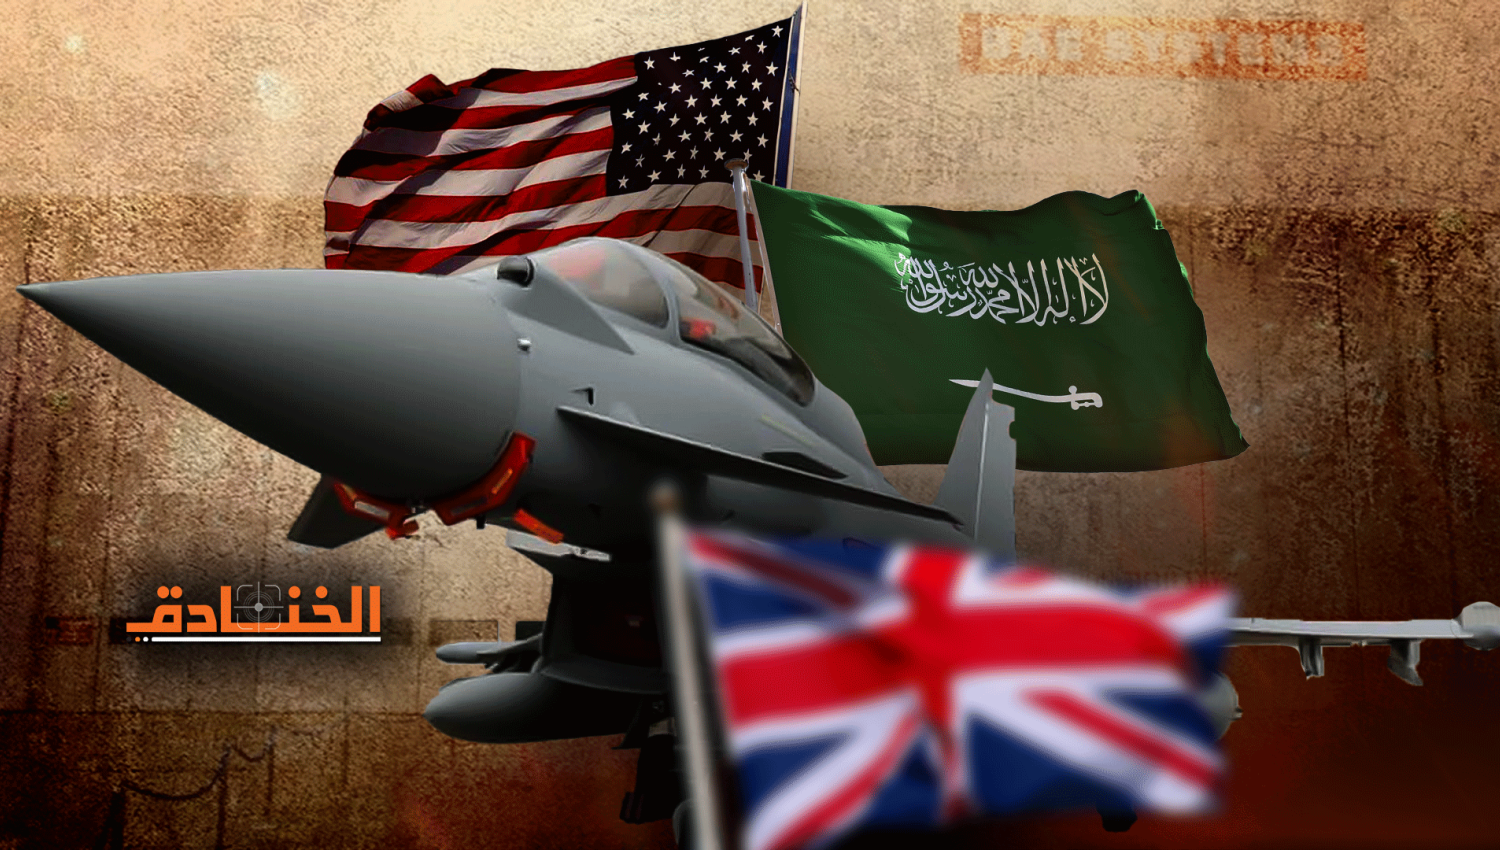 شركة BAE لصناعة الاسلحة تخوض معركة بين الرياض وواشنطن